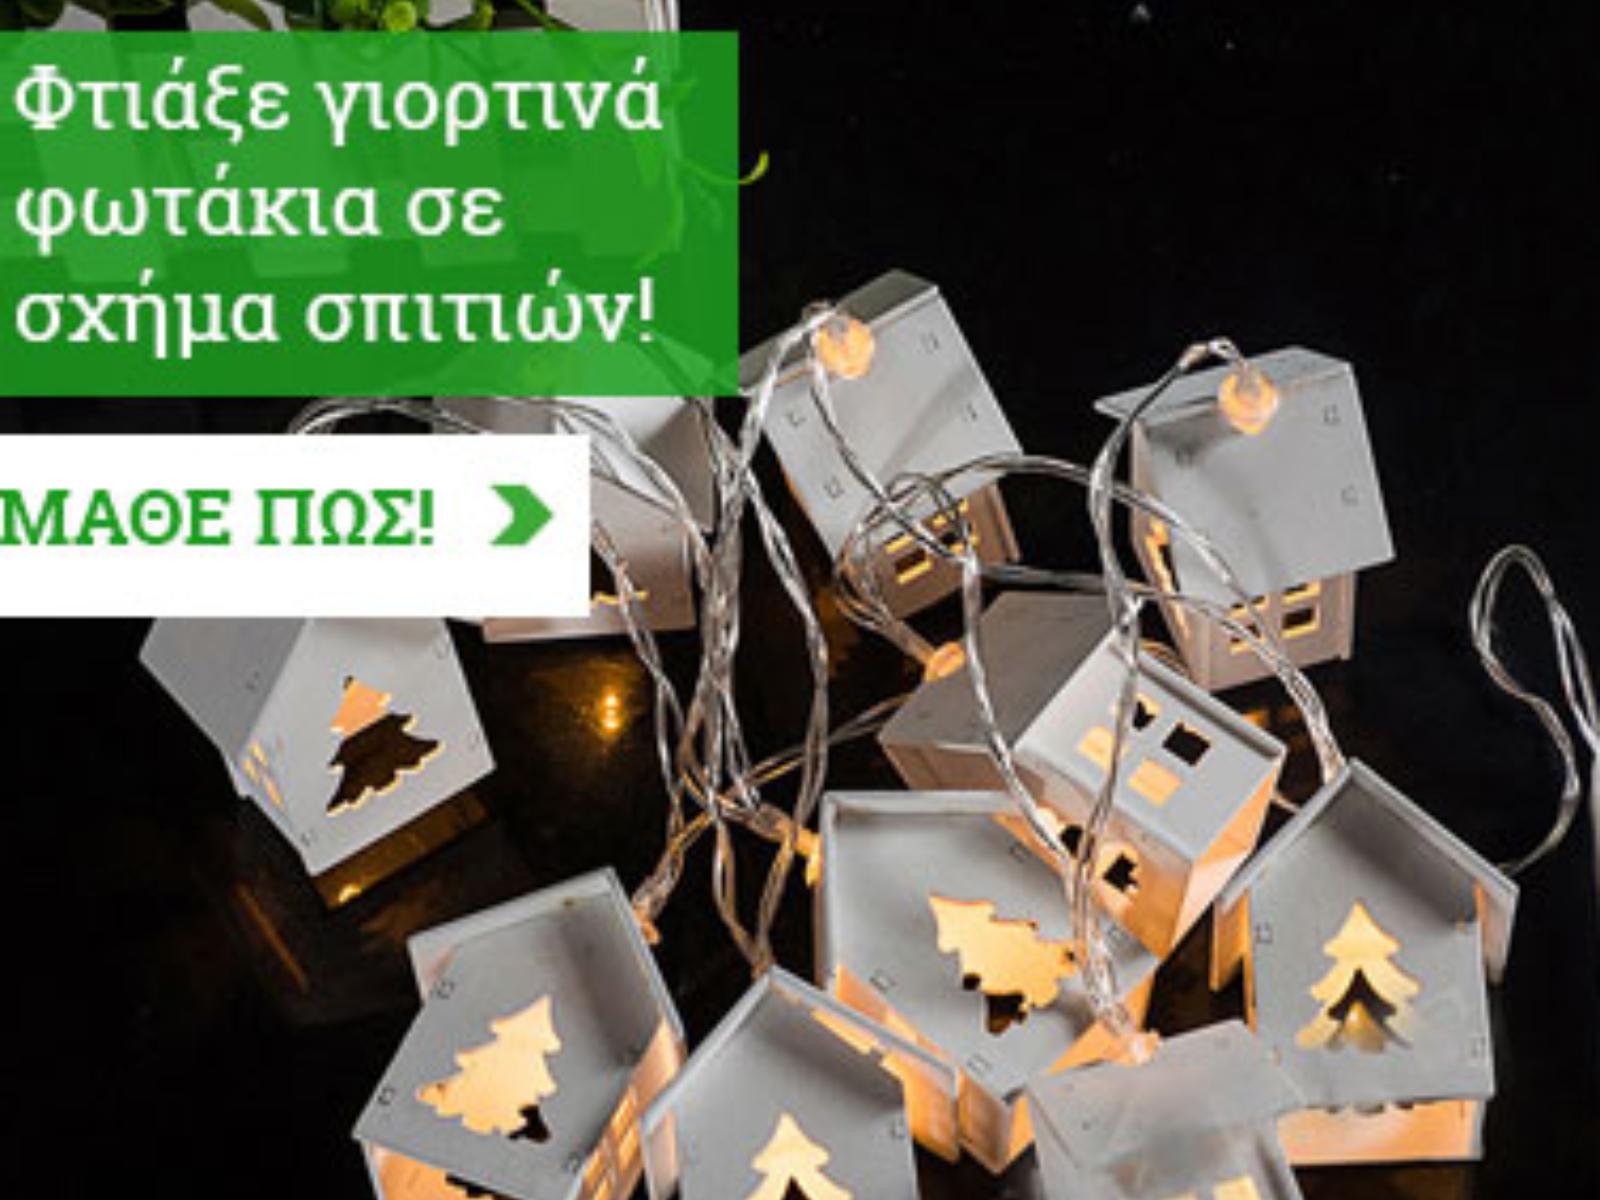 DIY-Γιορτινά φωτάκια σε σχήμα σπιτιών!